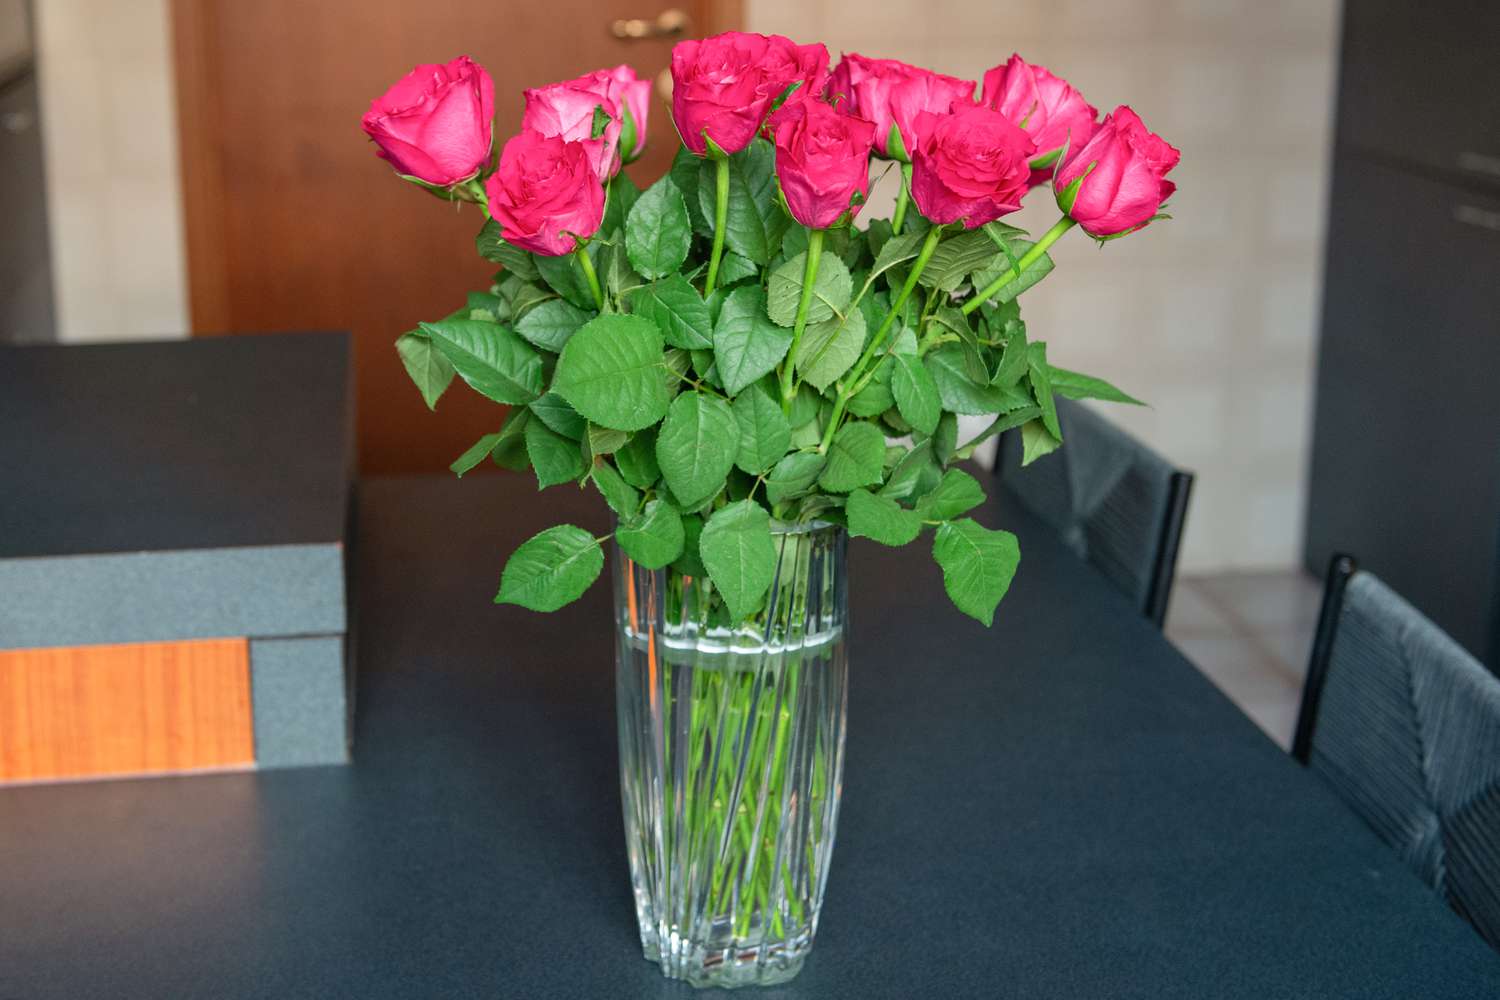 Tiges de roses roses disposées dans un vase en verre avec de l'eau sur la table